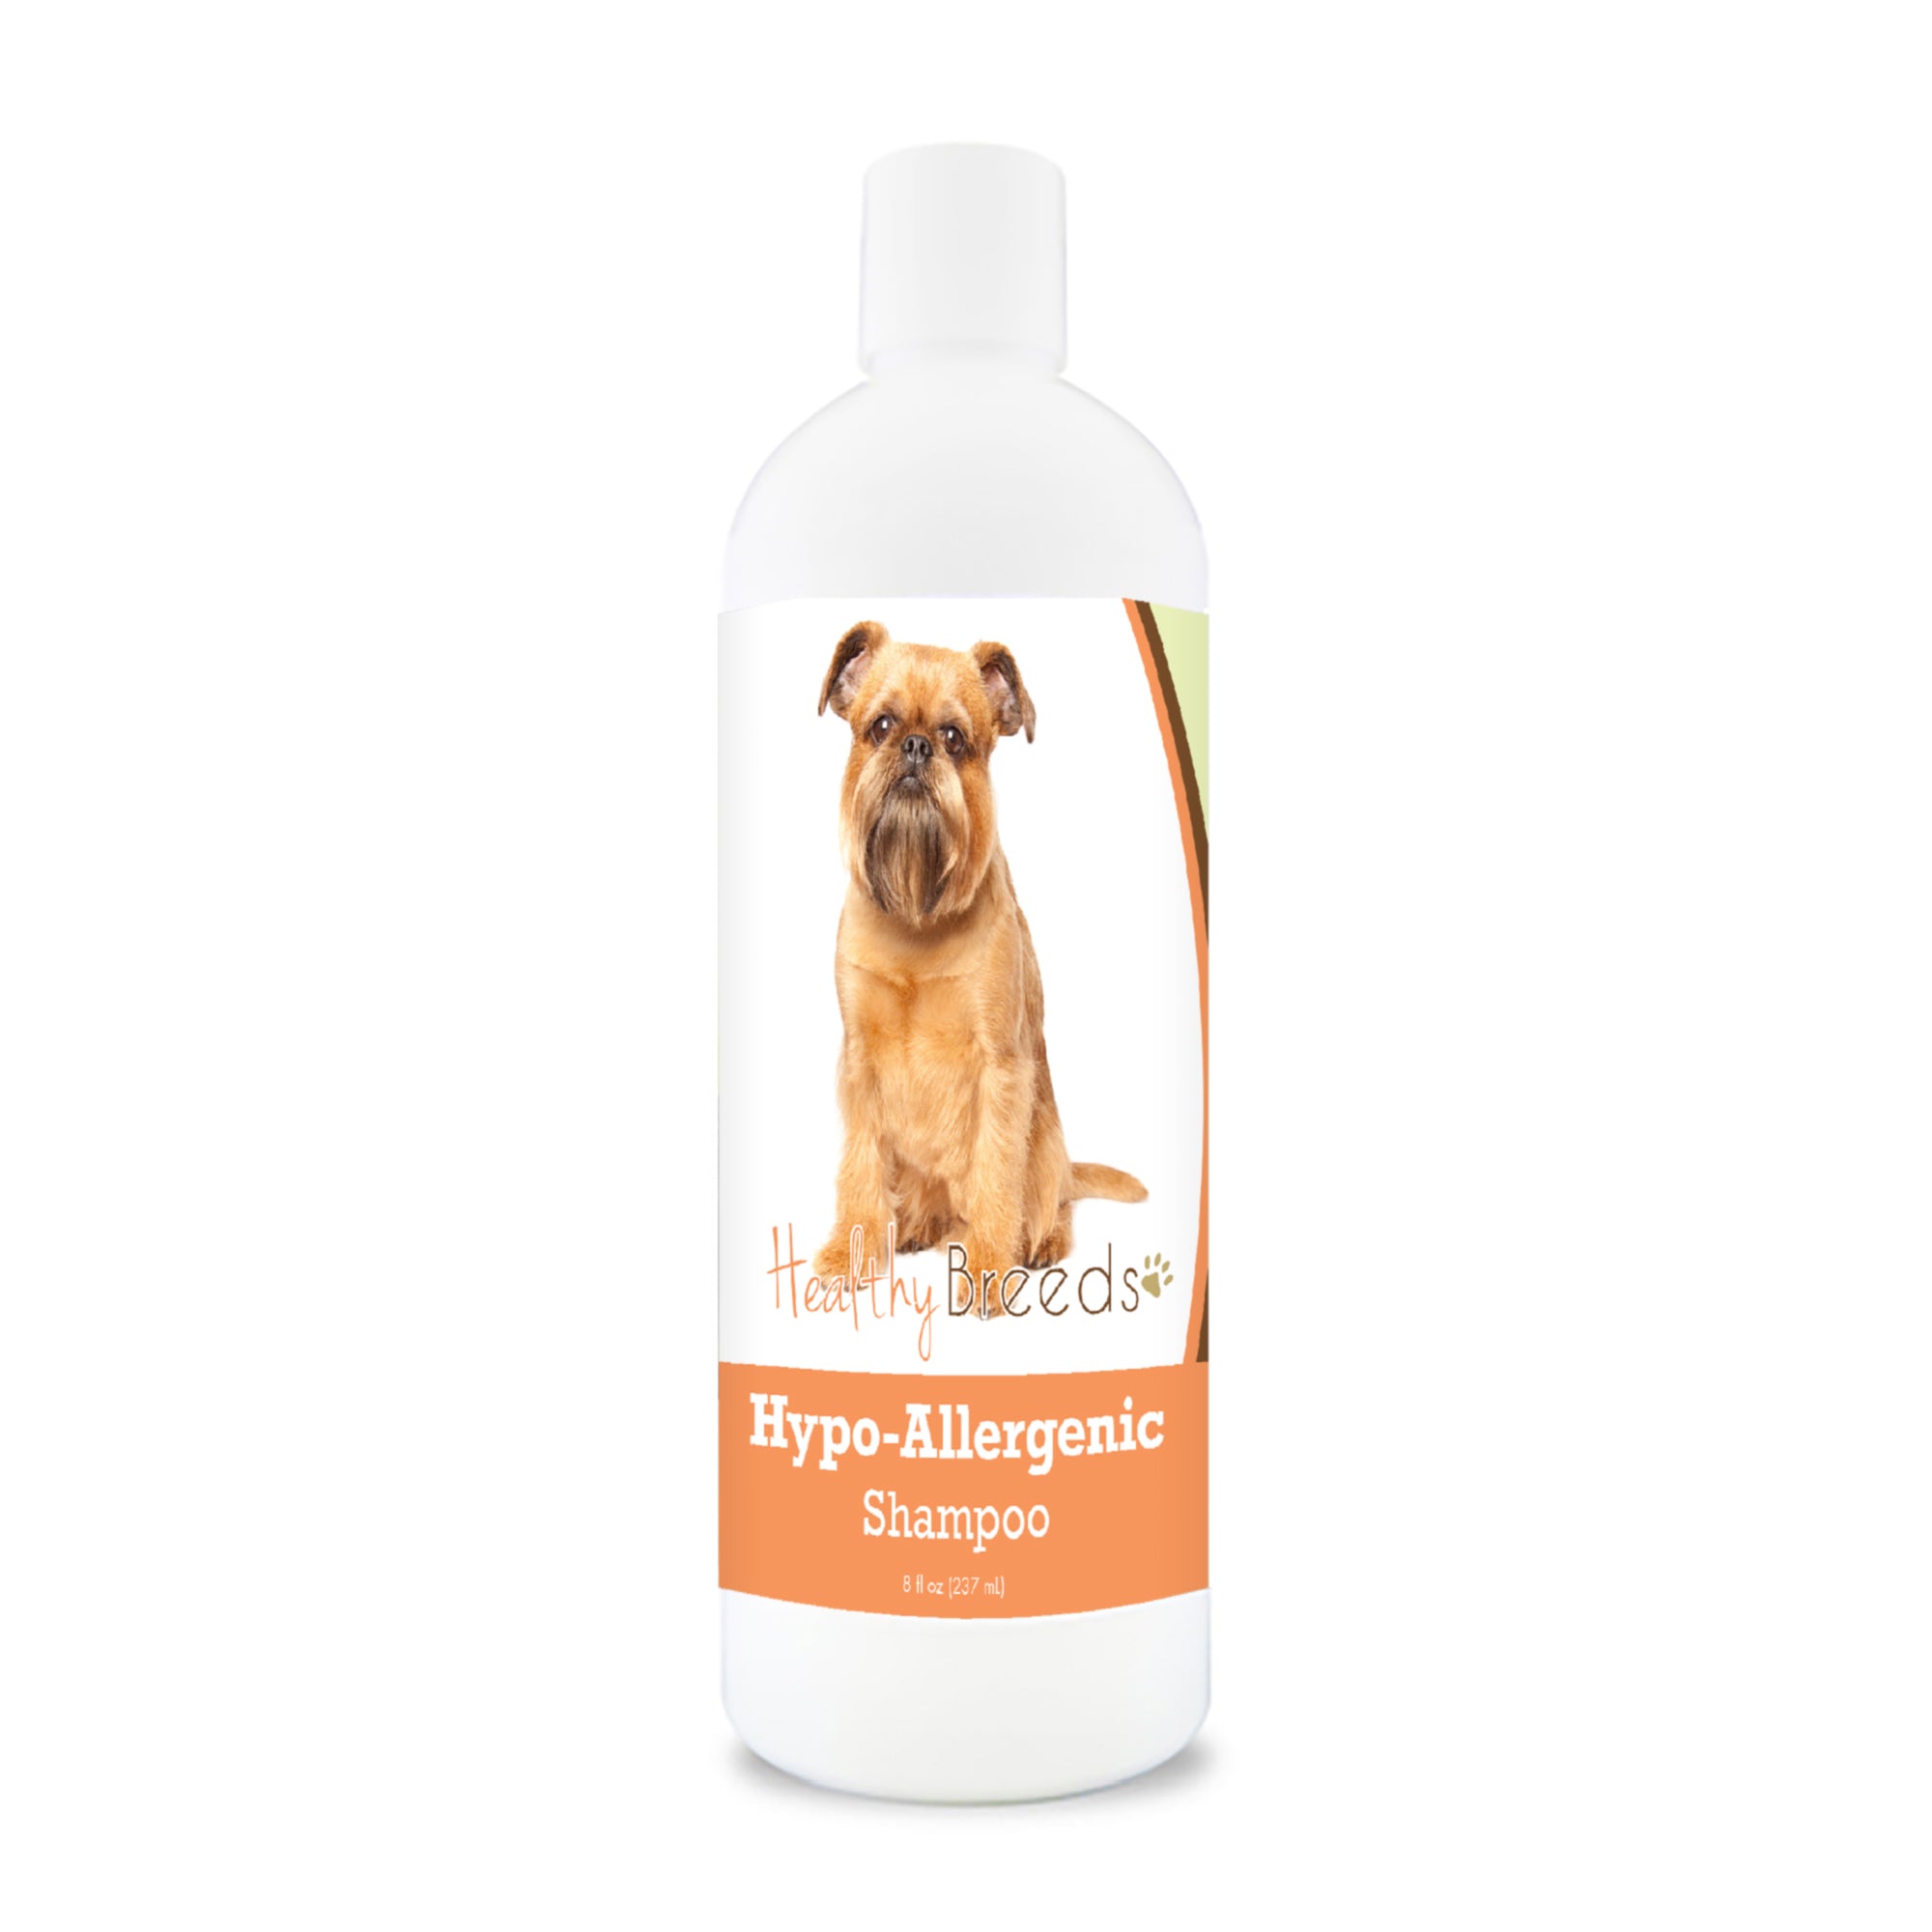 Brussels Griffon Hypo-Allergenic Shampoo 8 oz